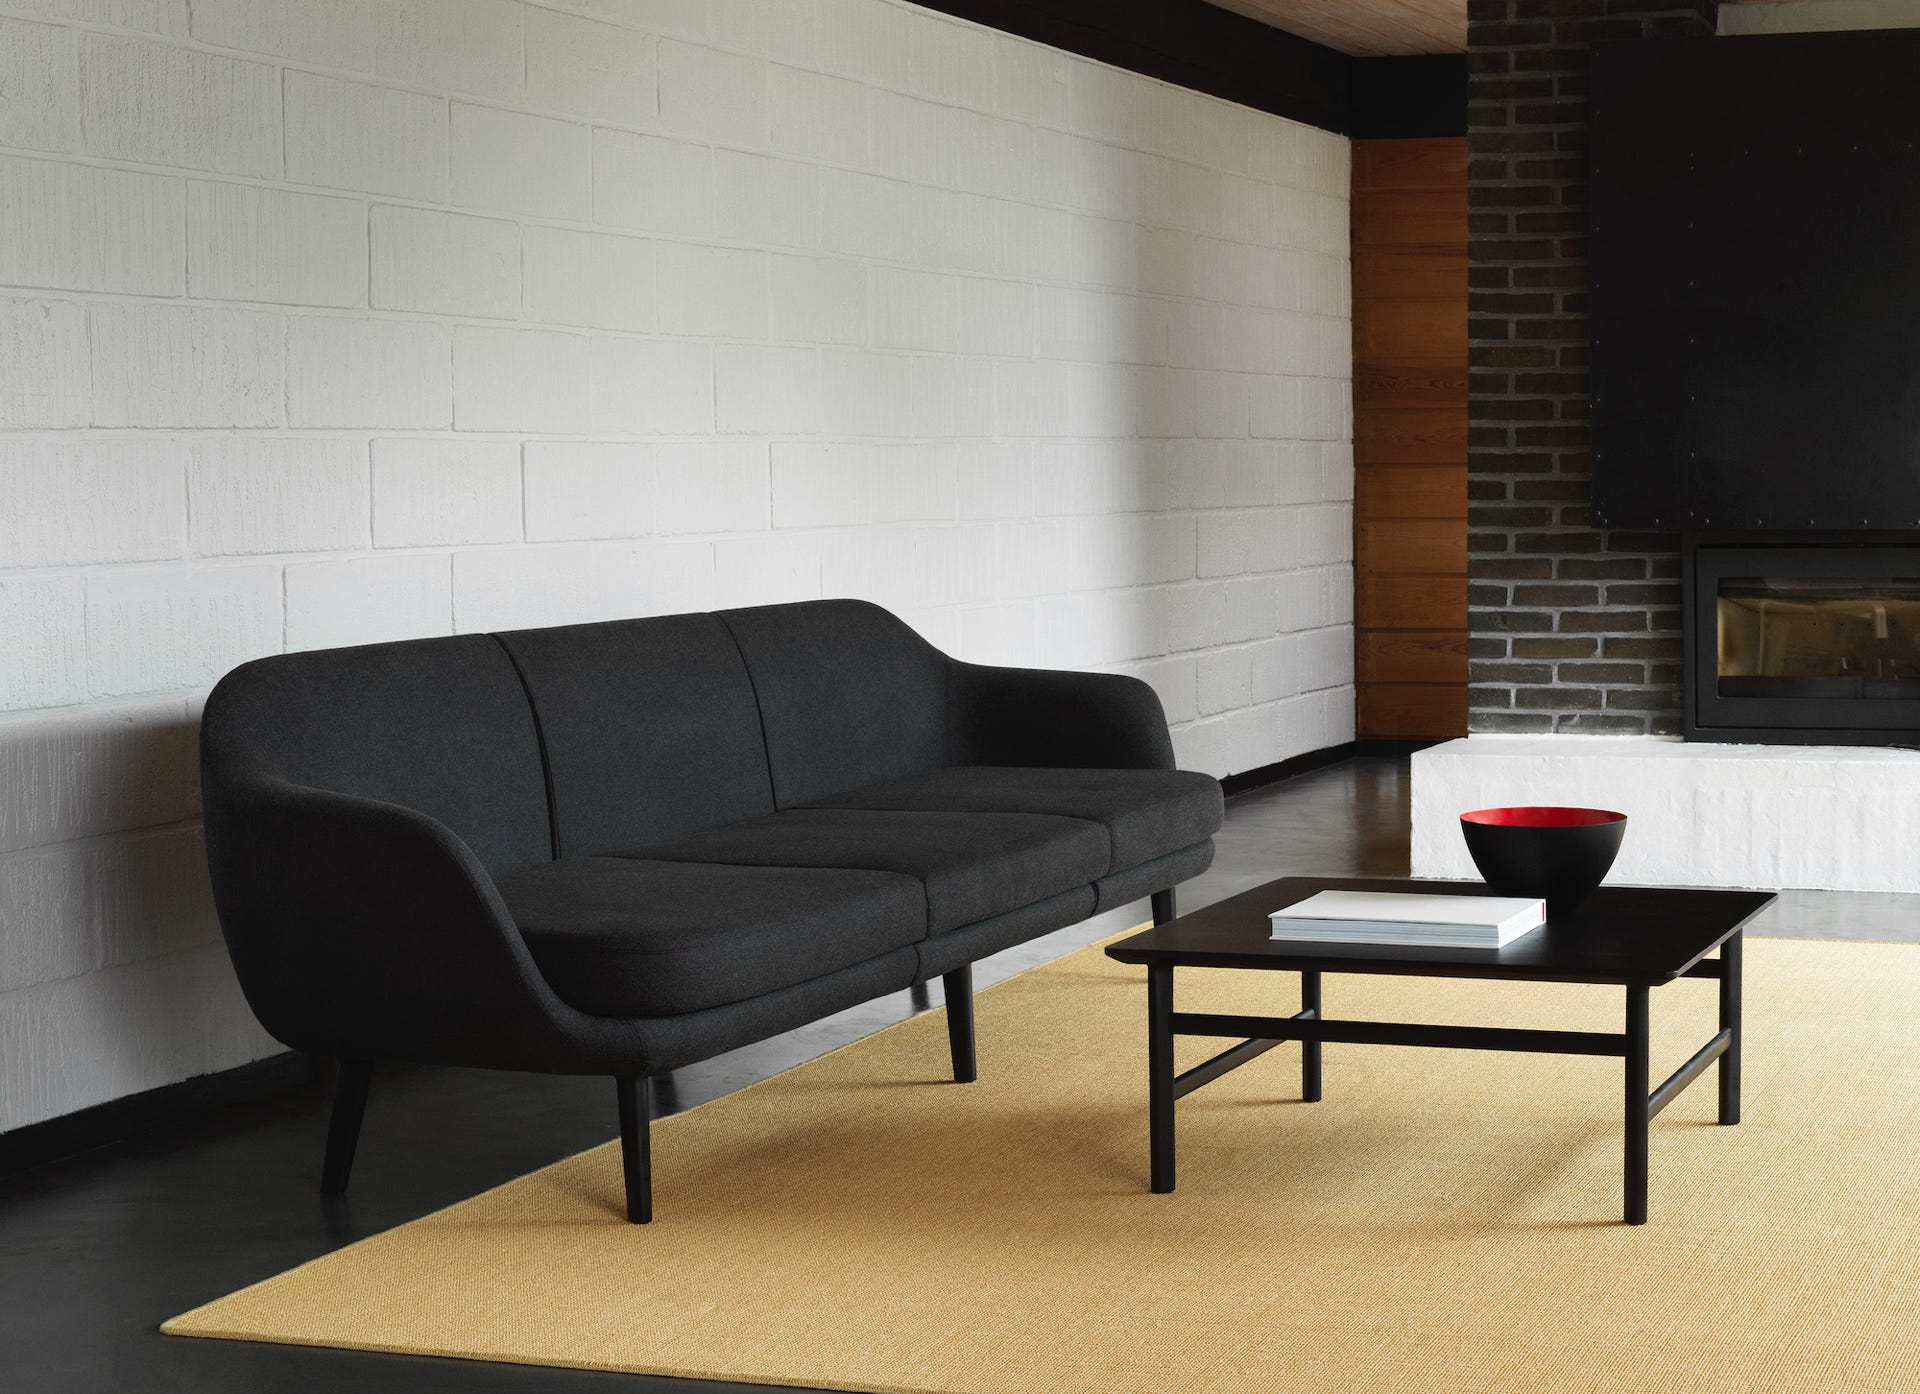 Sum modular sofa Simon Legald, 2018